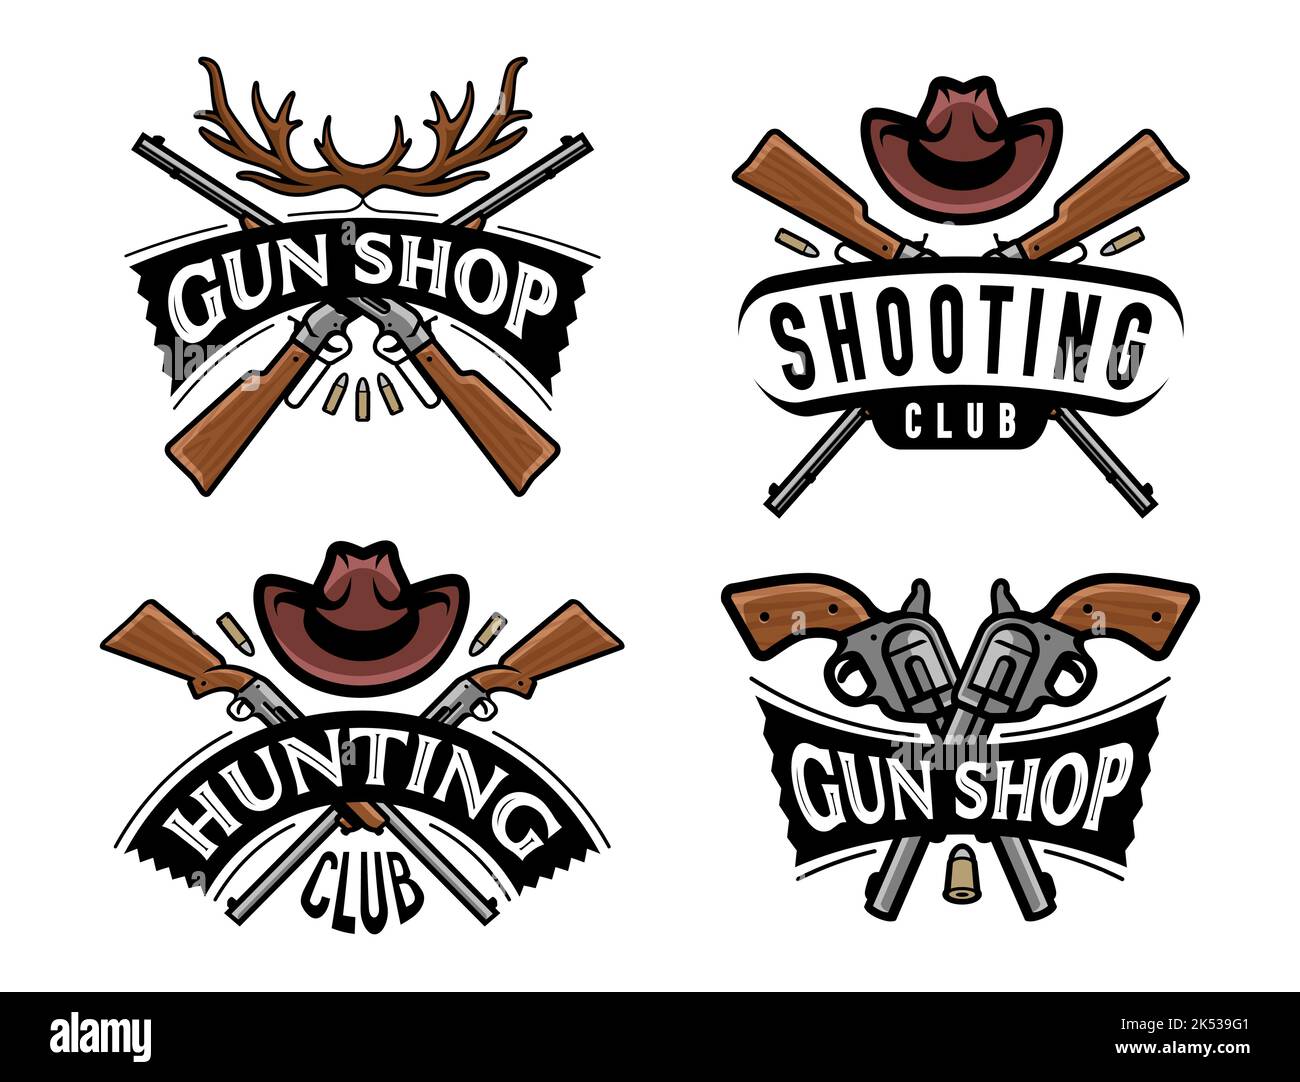 Negozio di armi da fuoco, badge o logo del club di caccia. Set di simboli pistola, fucile. Illustrazione vettoriale dell'emblema del club di tiro Illustrazione Vettoriale